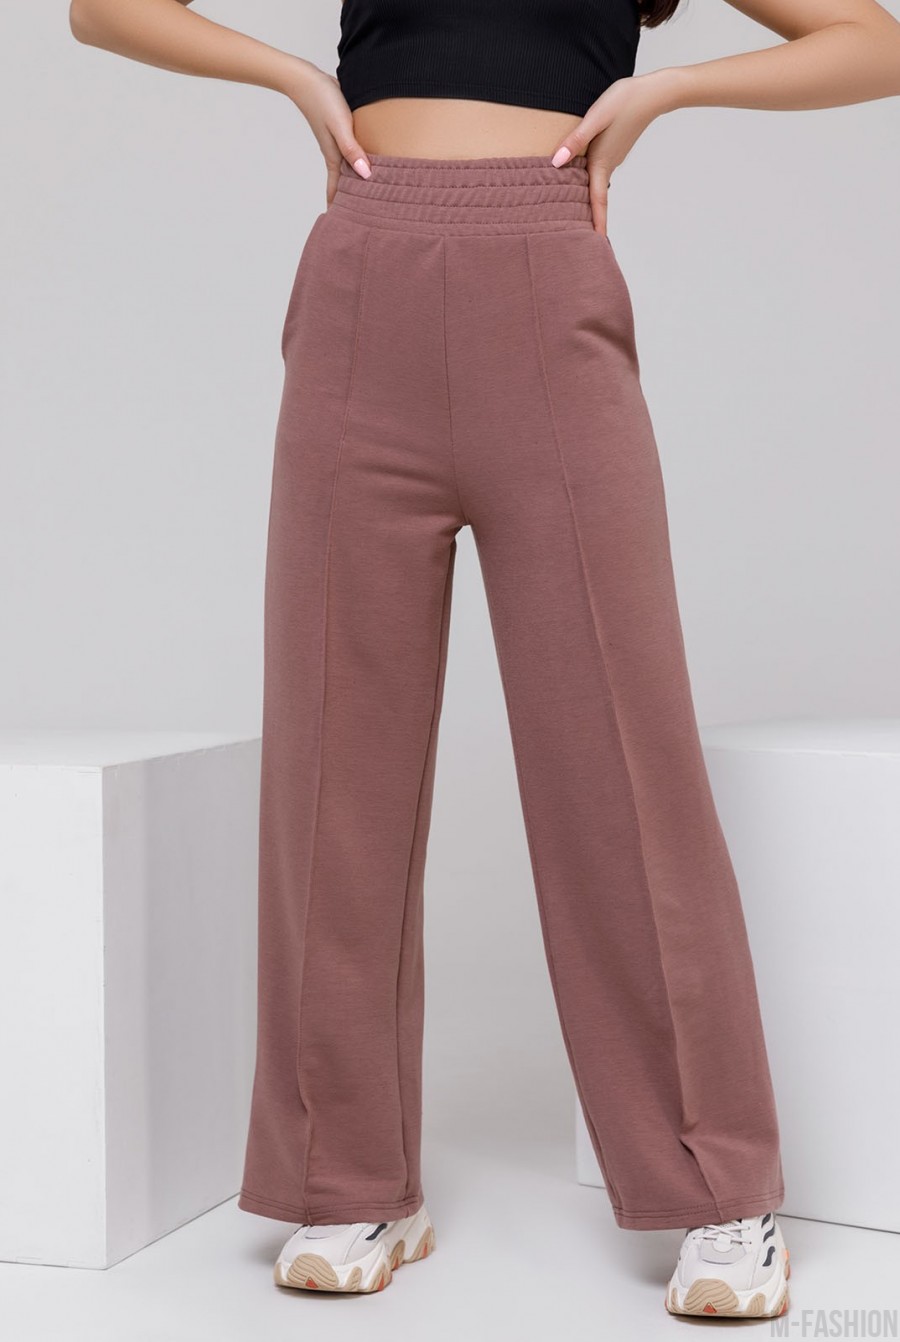 Коричневые утепленные широкие штаны со стрелками - Фото 1